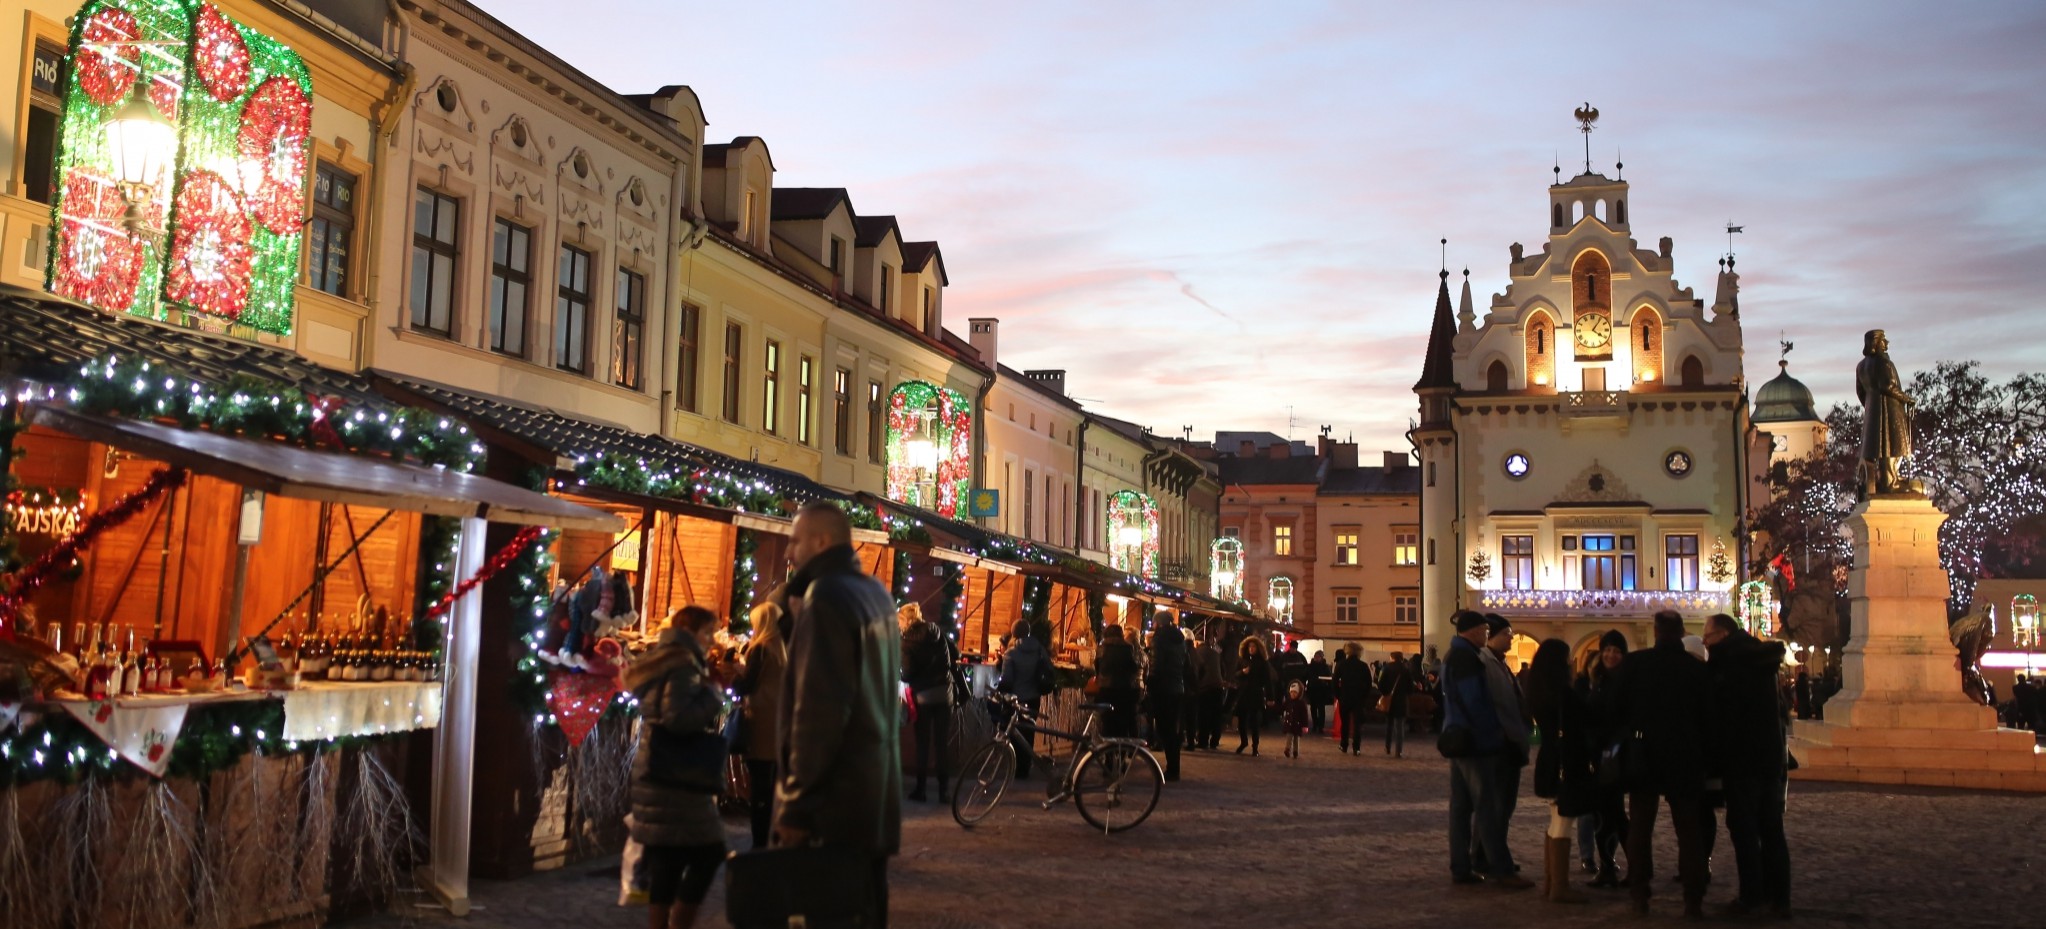 7 grudnia na rzeszowskim Rynku stanie jarmark bożonarodzeniowy! (PROGRAM)